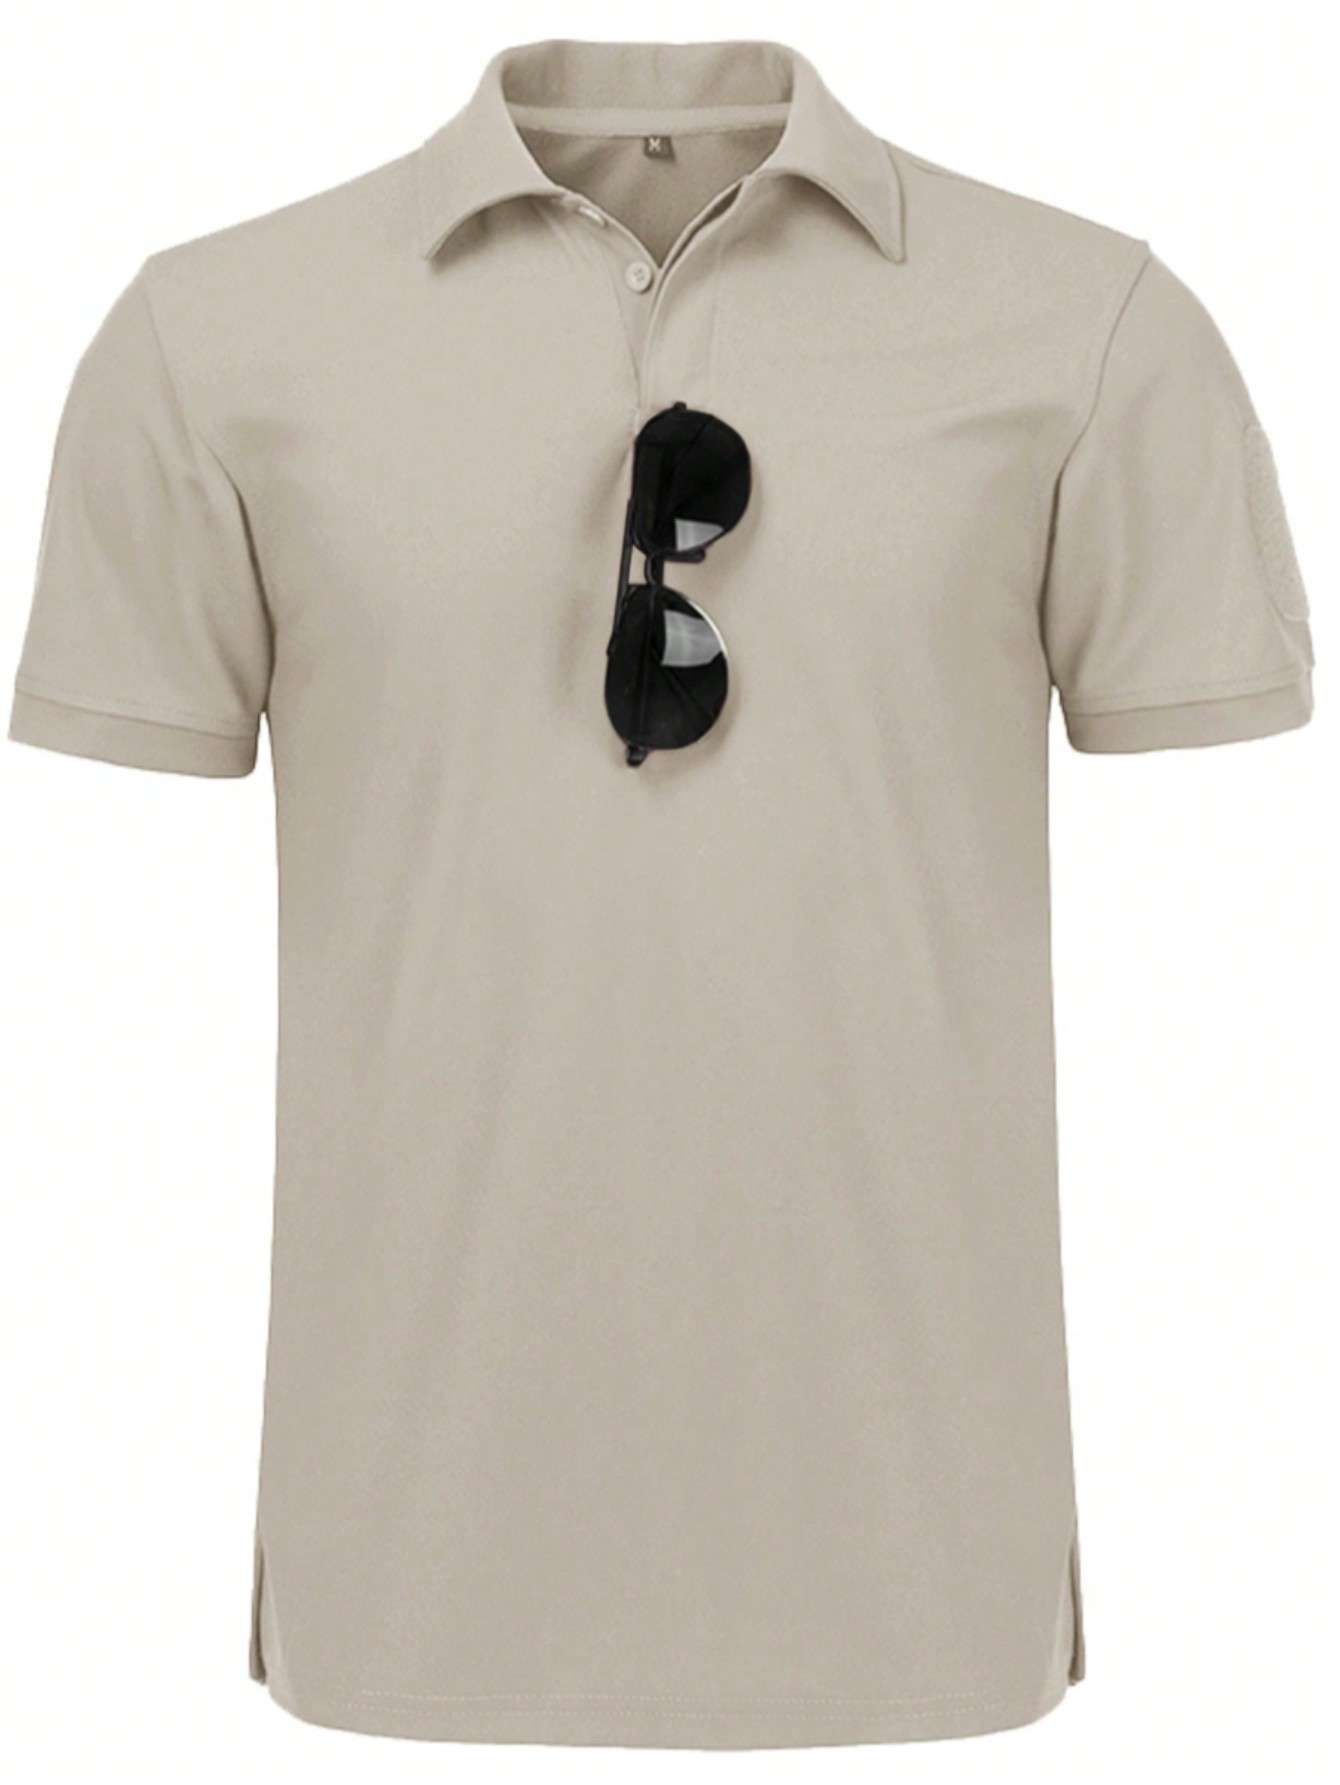 Мужская рубашка поло с коротким рукавом для отдыха, бежевый футболка поло для гольфа с логотипом tech j lindeberg цвет high rise